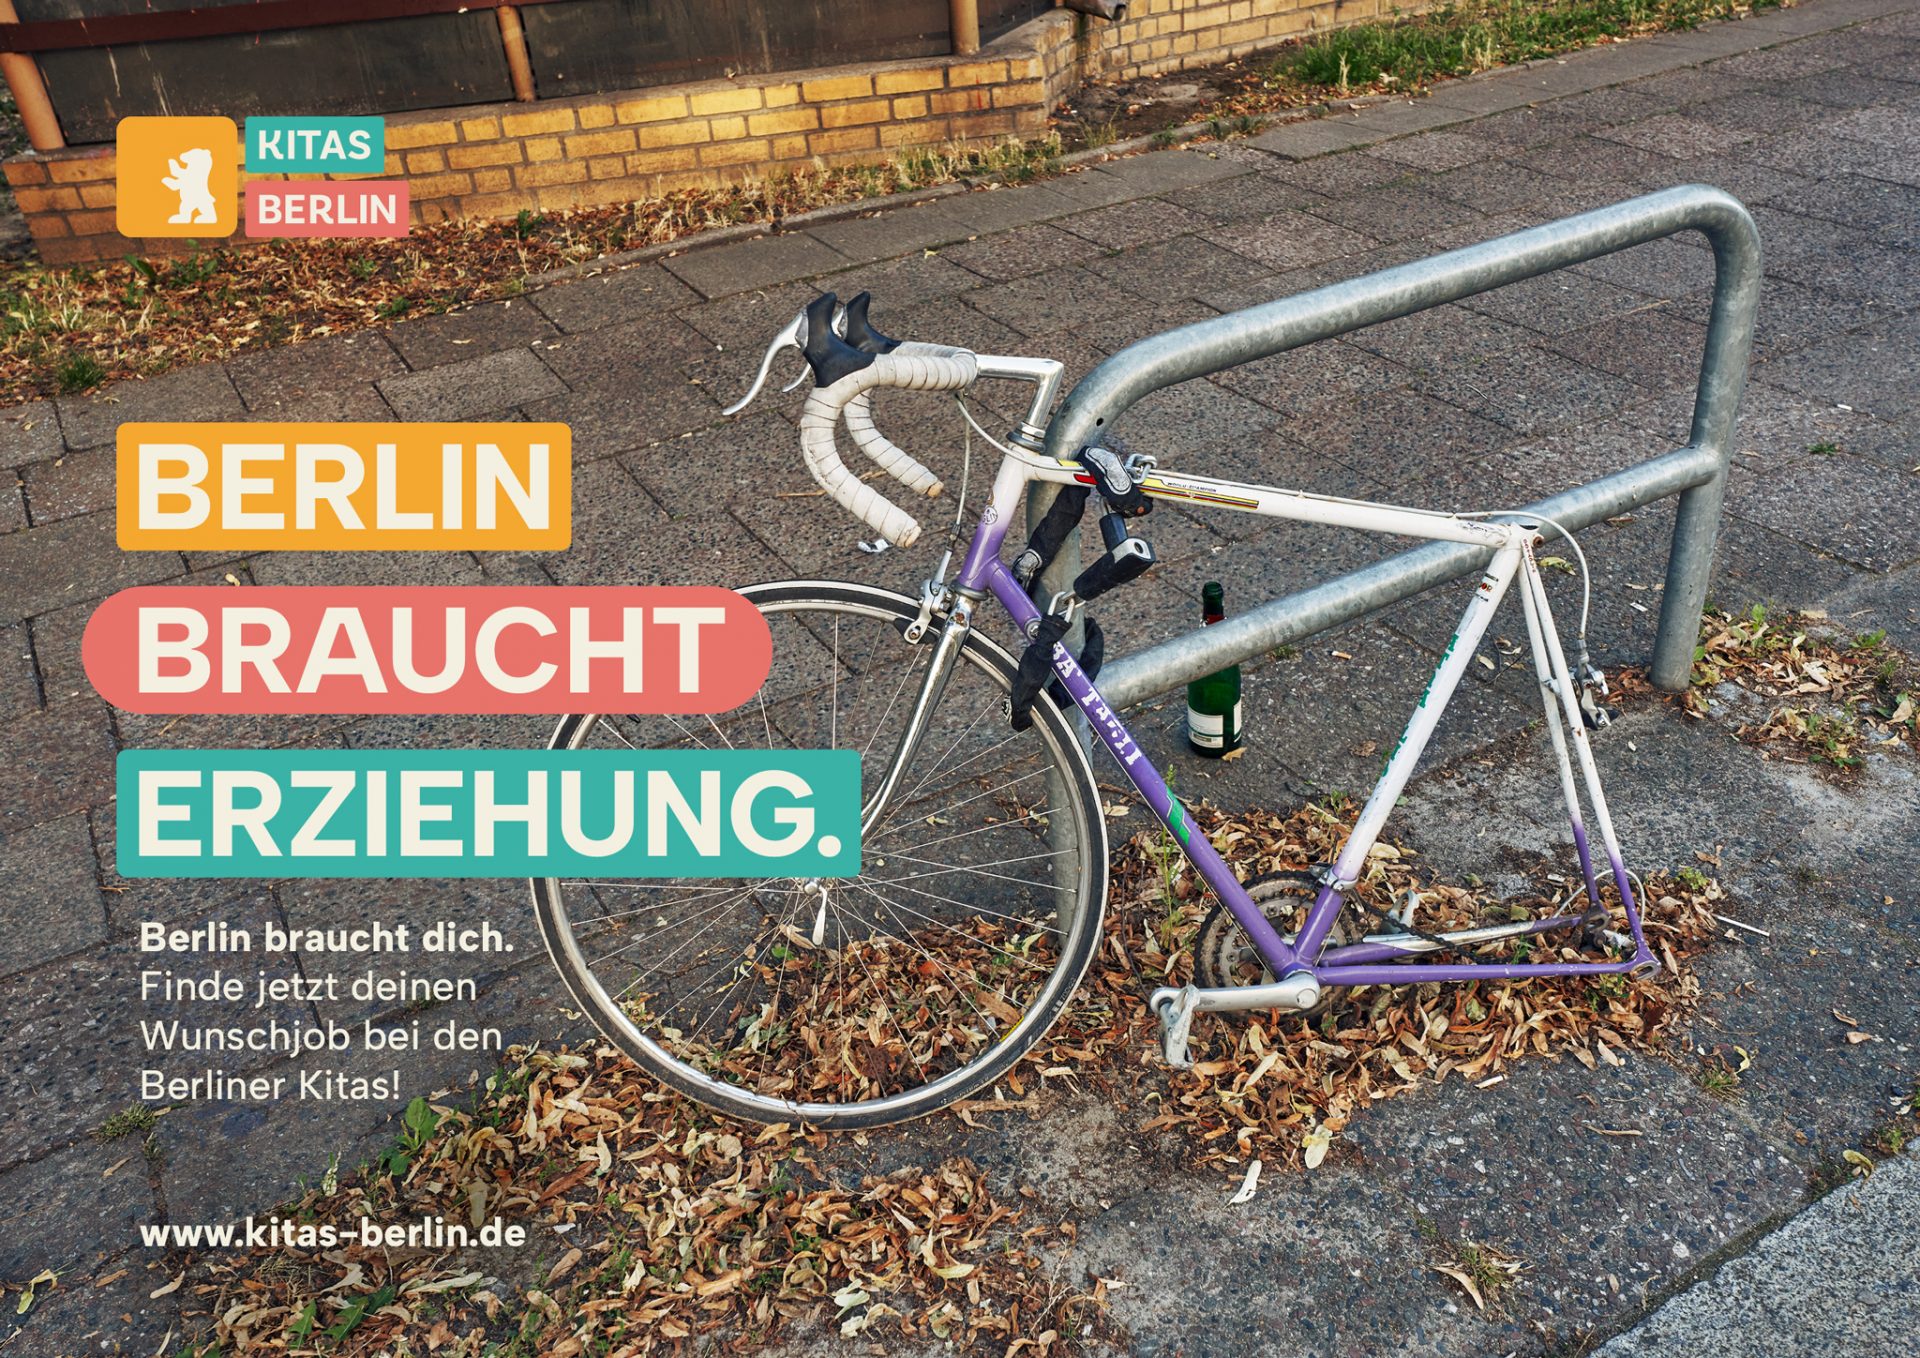 KitasBerlin_BerlinBrauchtErziehung_Motive_Fahrrad